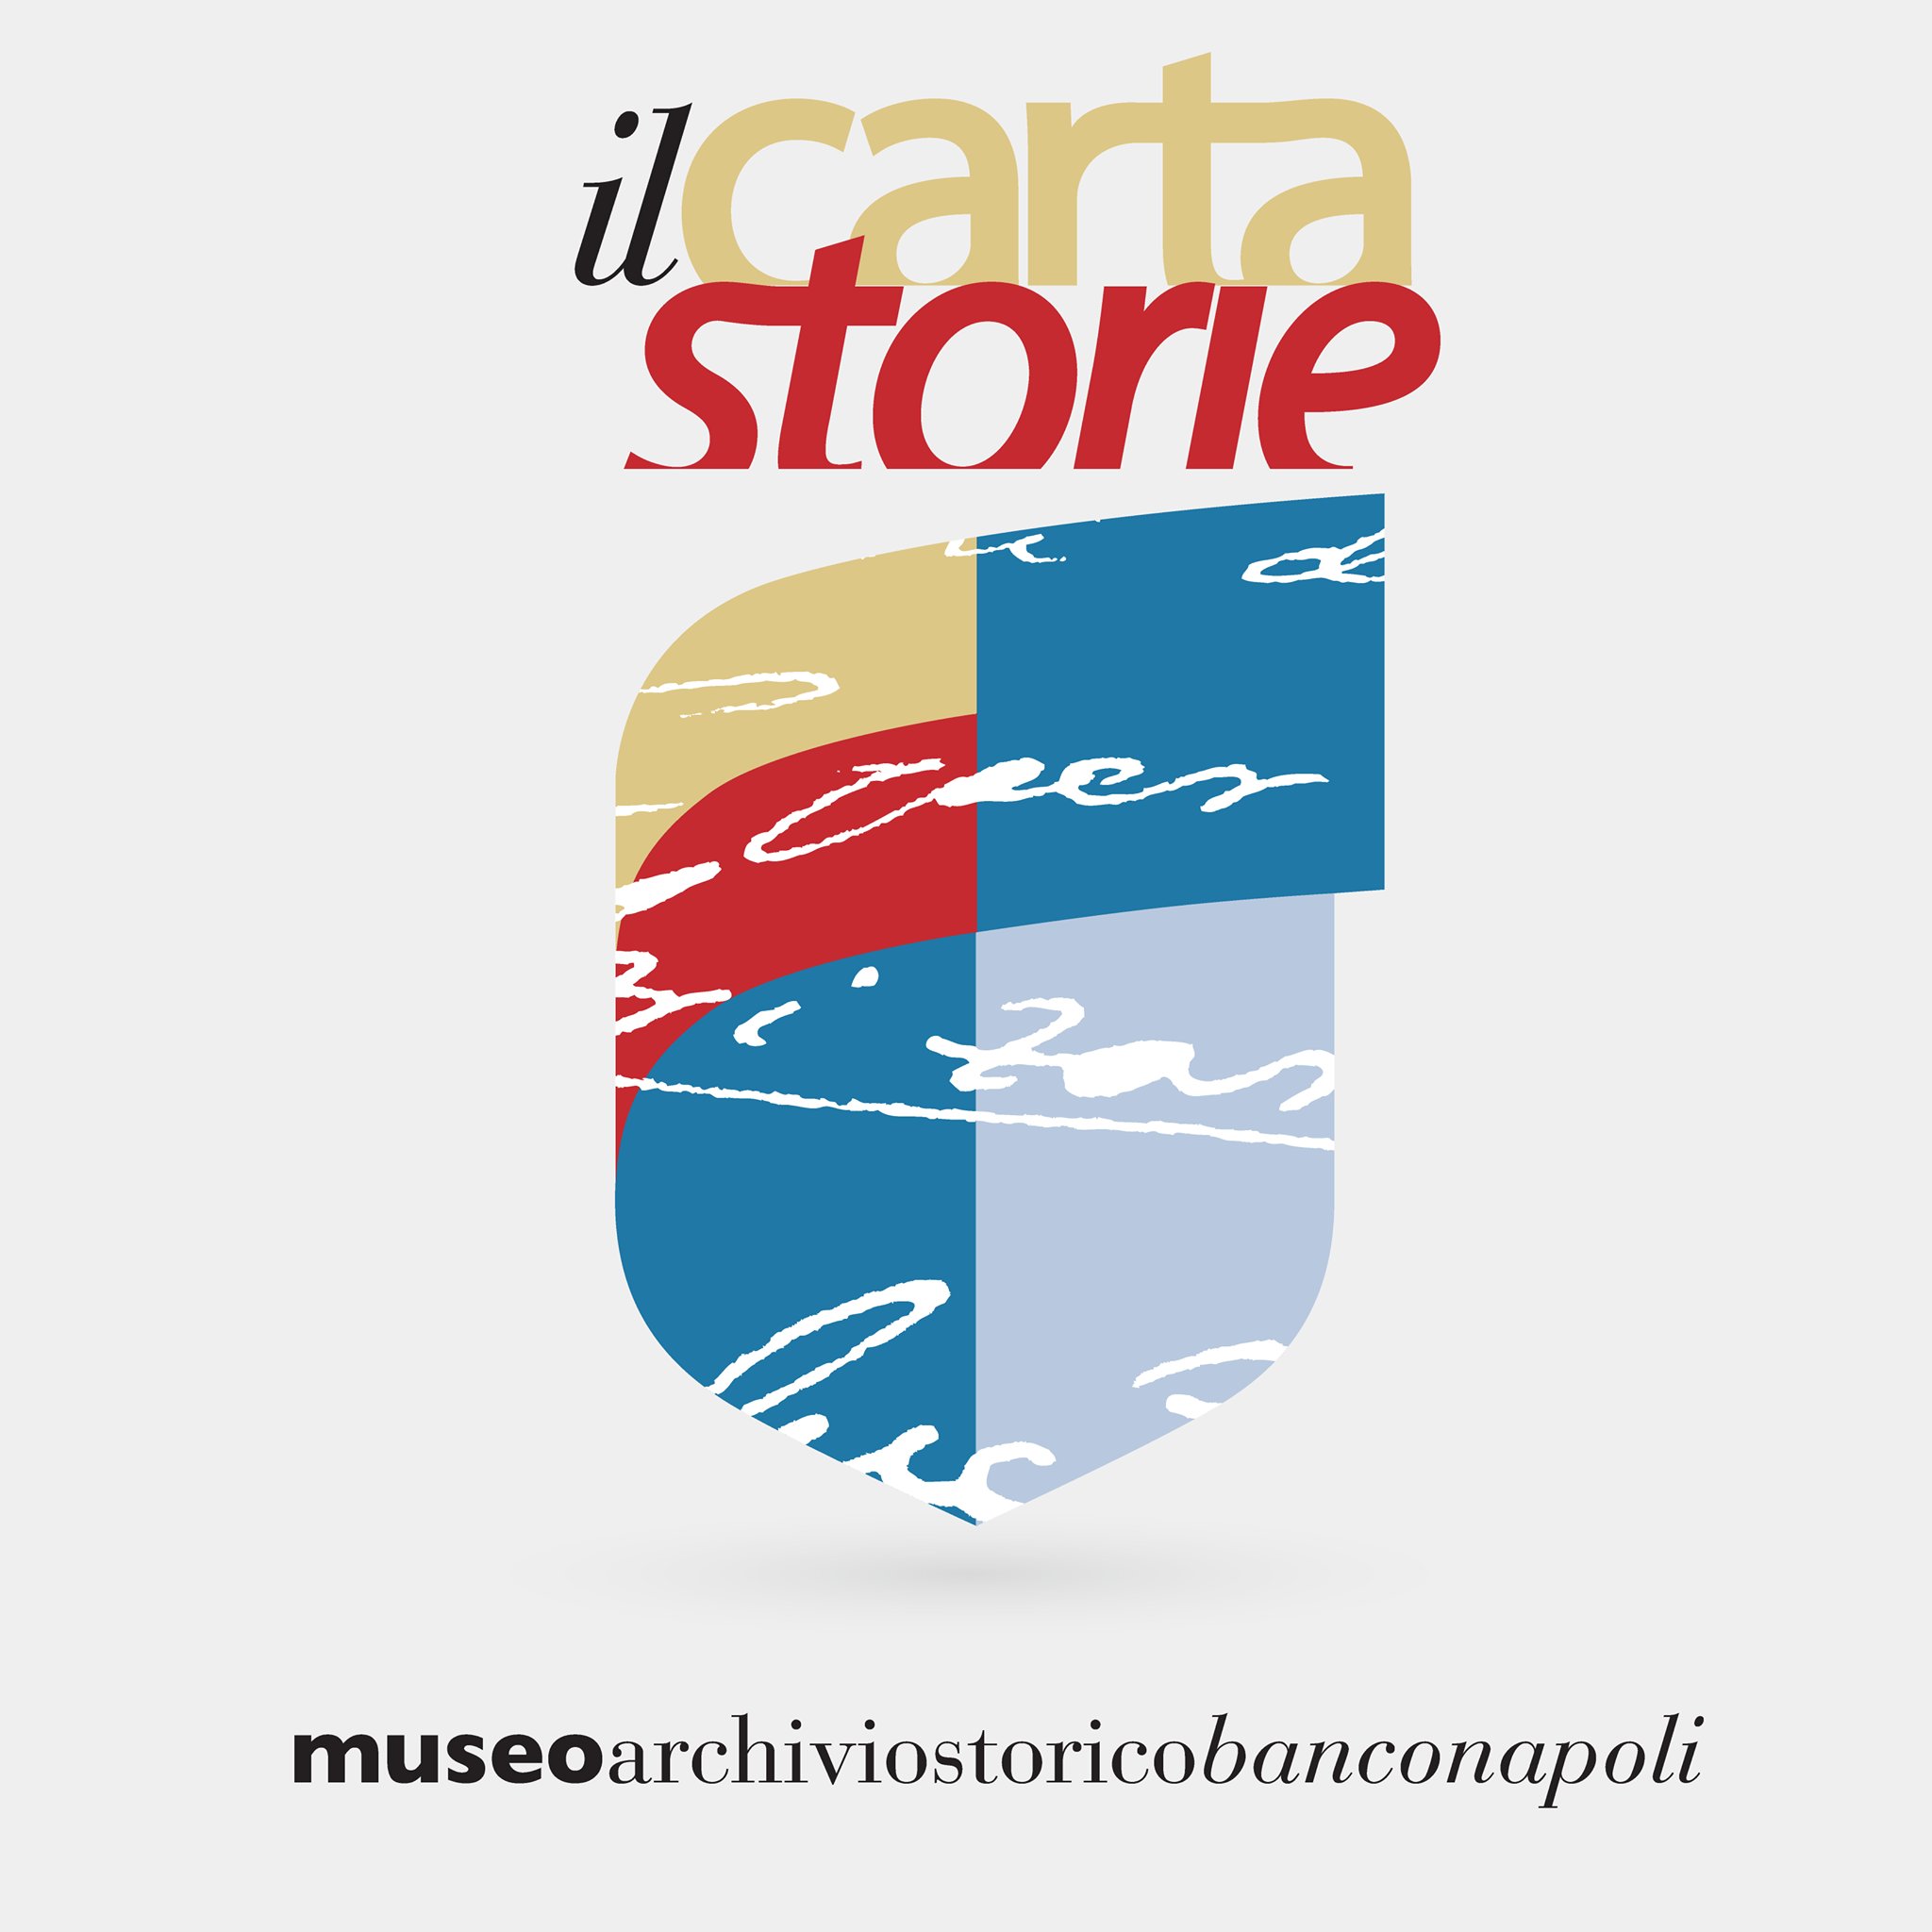 Pagina ufficiale del Museo dell'Archivio Storico del Banco di Napoli. 

Vincitore dell'Europa Nostra Award 2107 e del Premio Cultura + Impresa 2016.